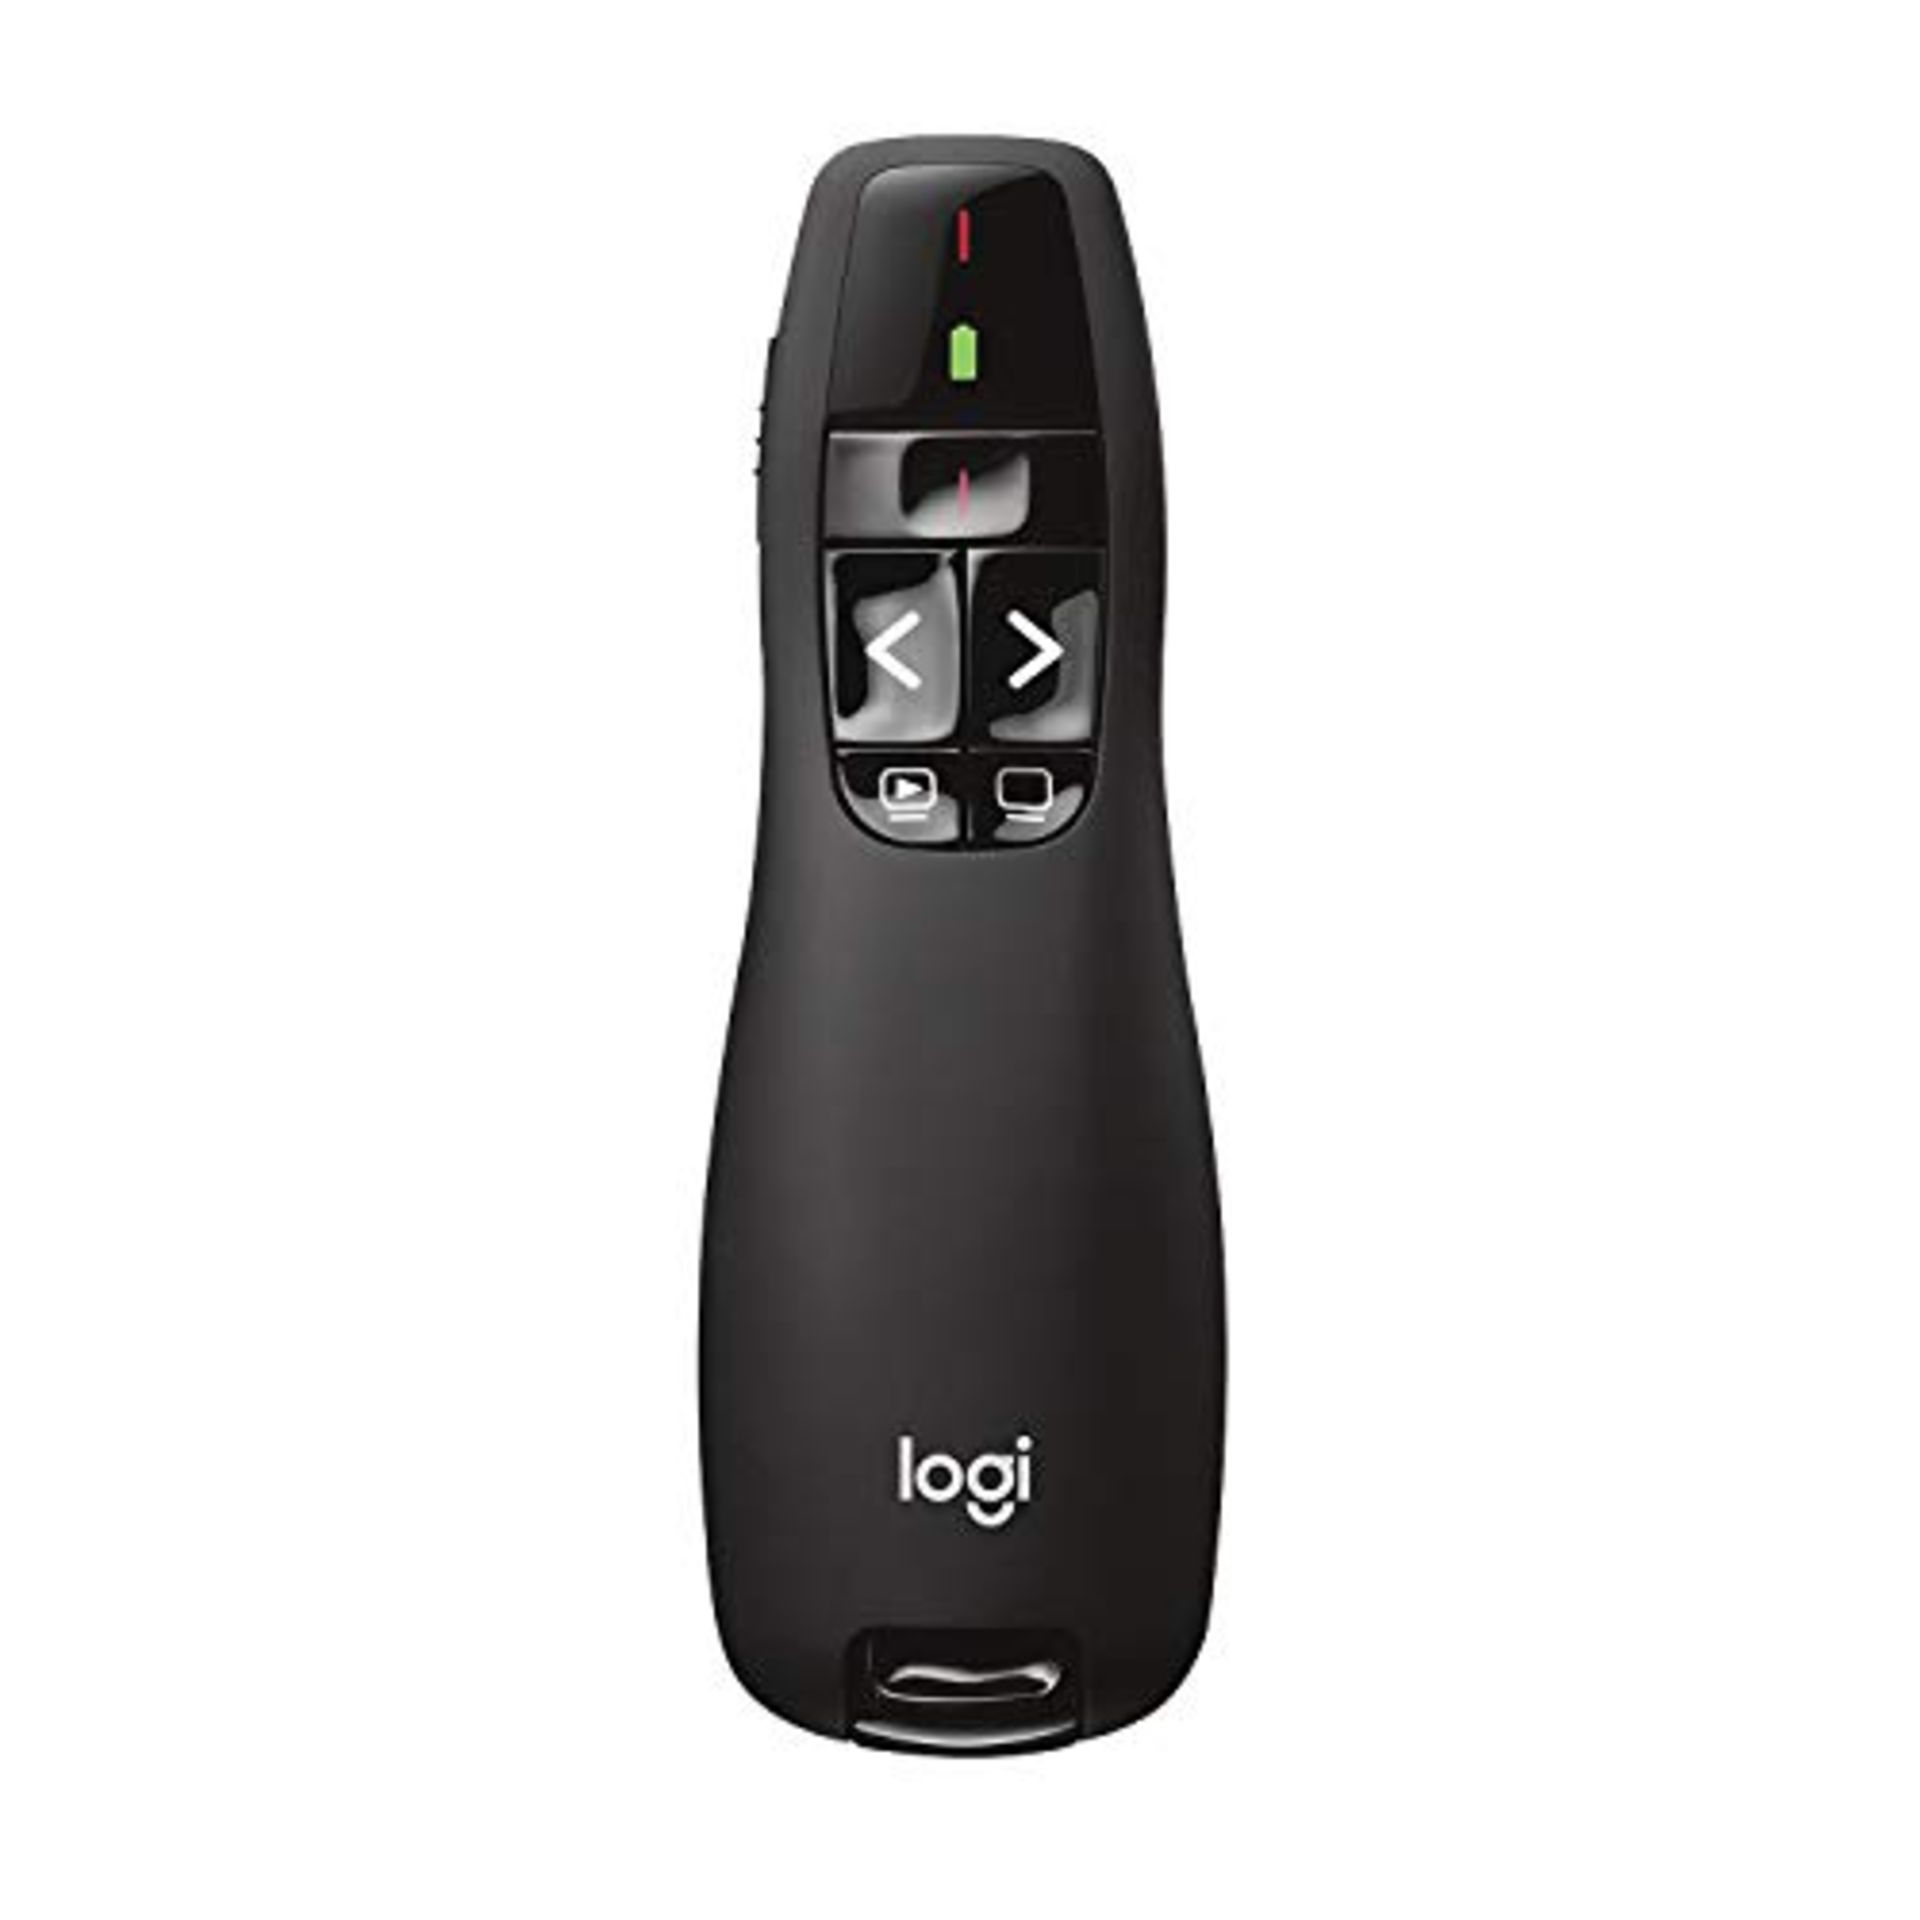 Logitech R400 Wireless Presentation Remote, 2.4 GHz/USB Receiver, Red Laser Pointer, 1 - Bild 3 aus 4